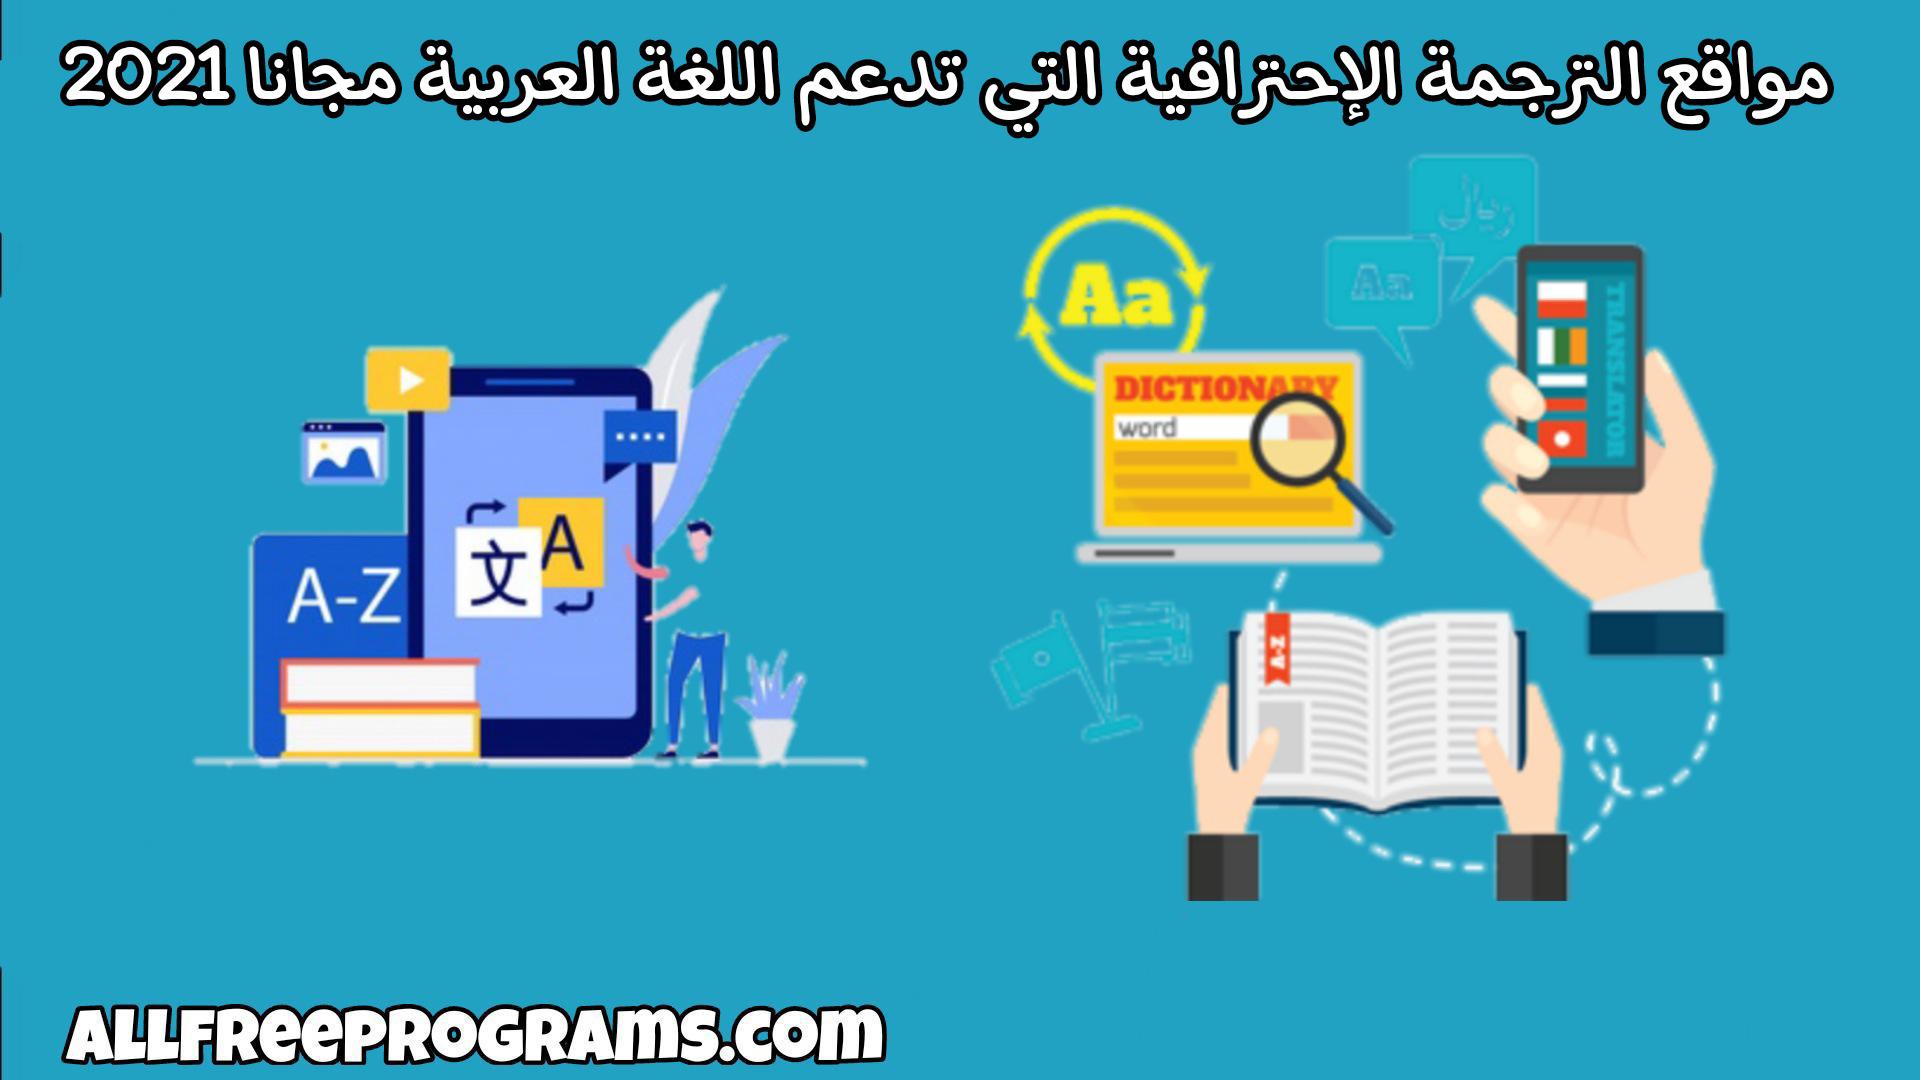 أفضل مواقع الترجمة الإحترافية التي تدعم اللغة العربية مجانا